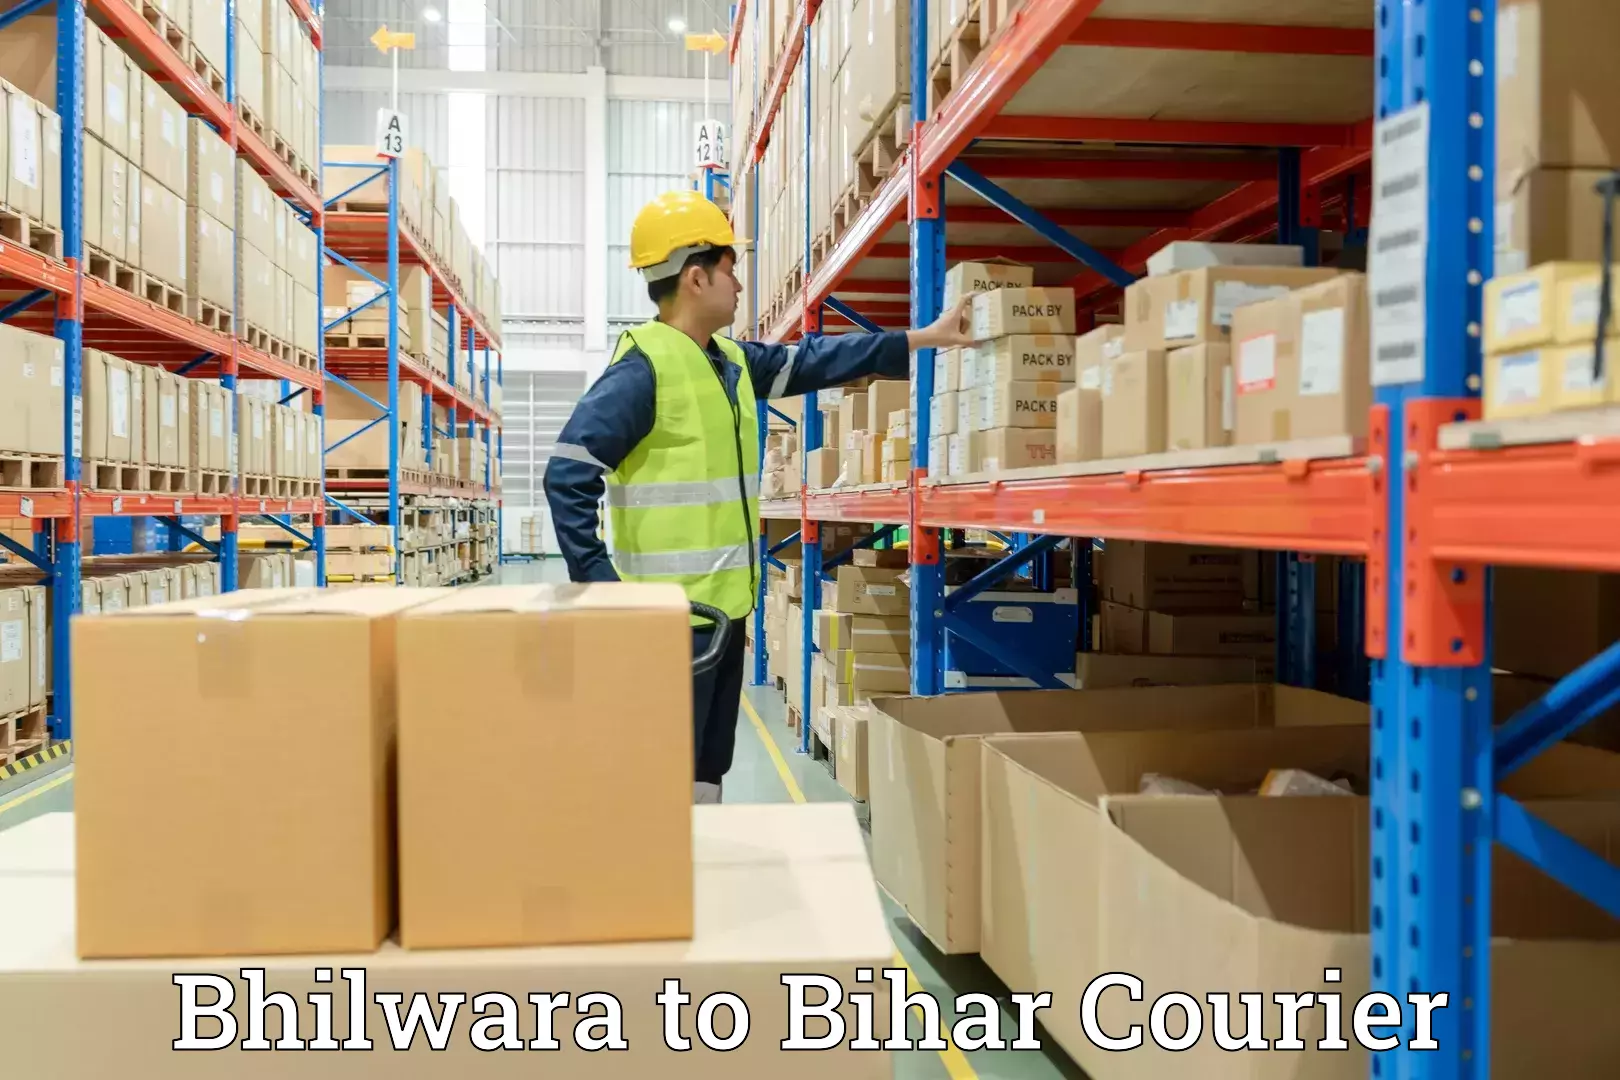 Furniture handling services Bhilwara to Bihar